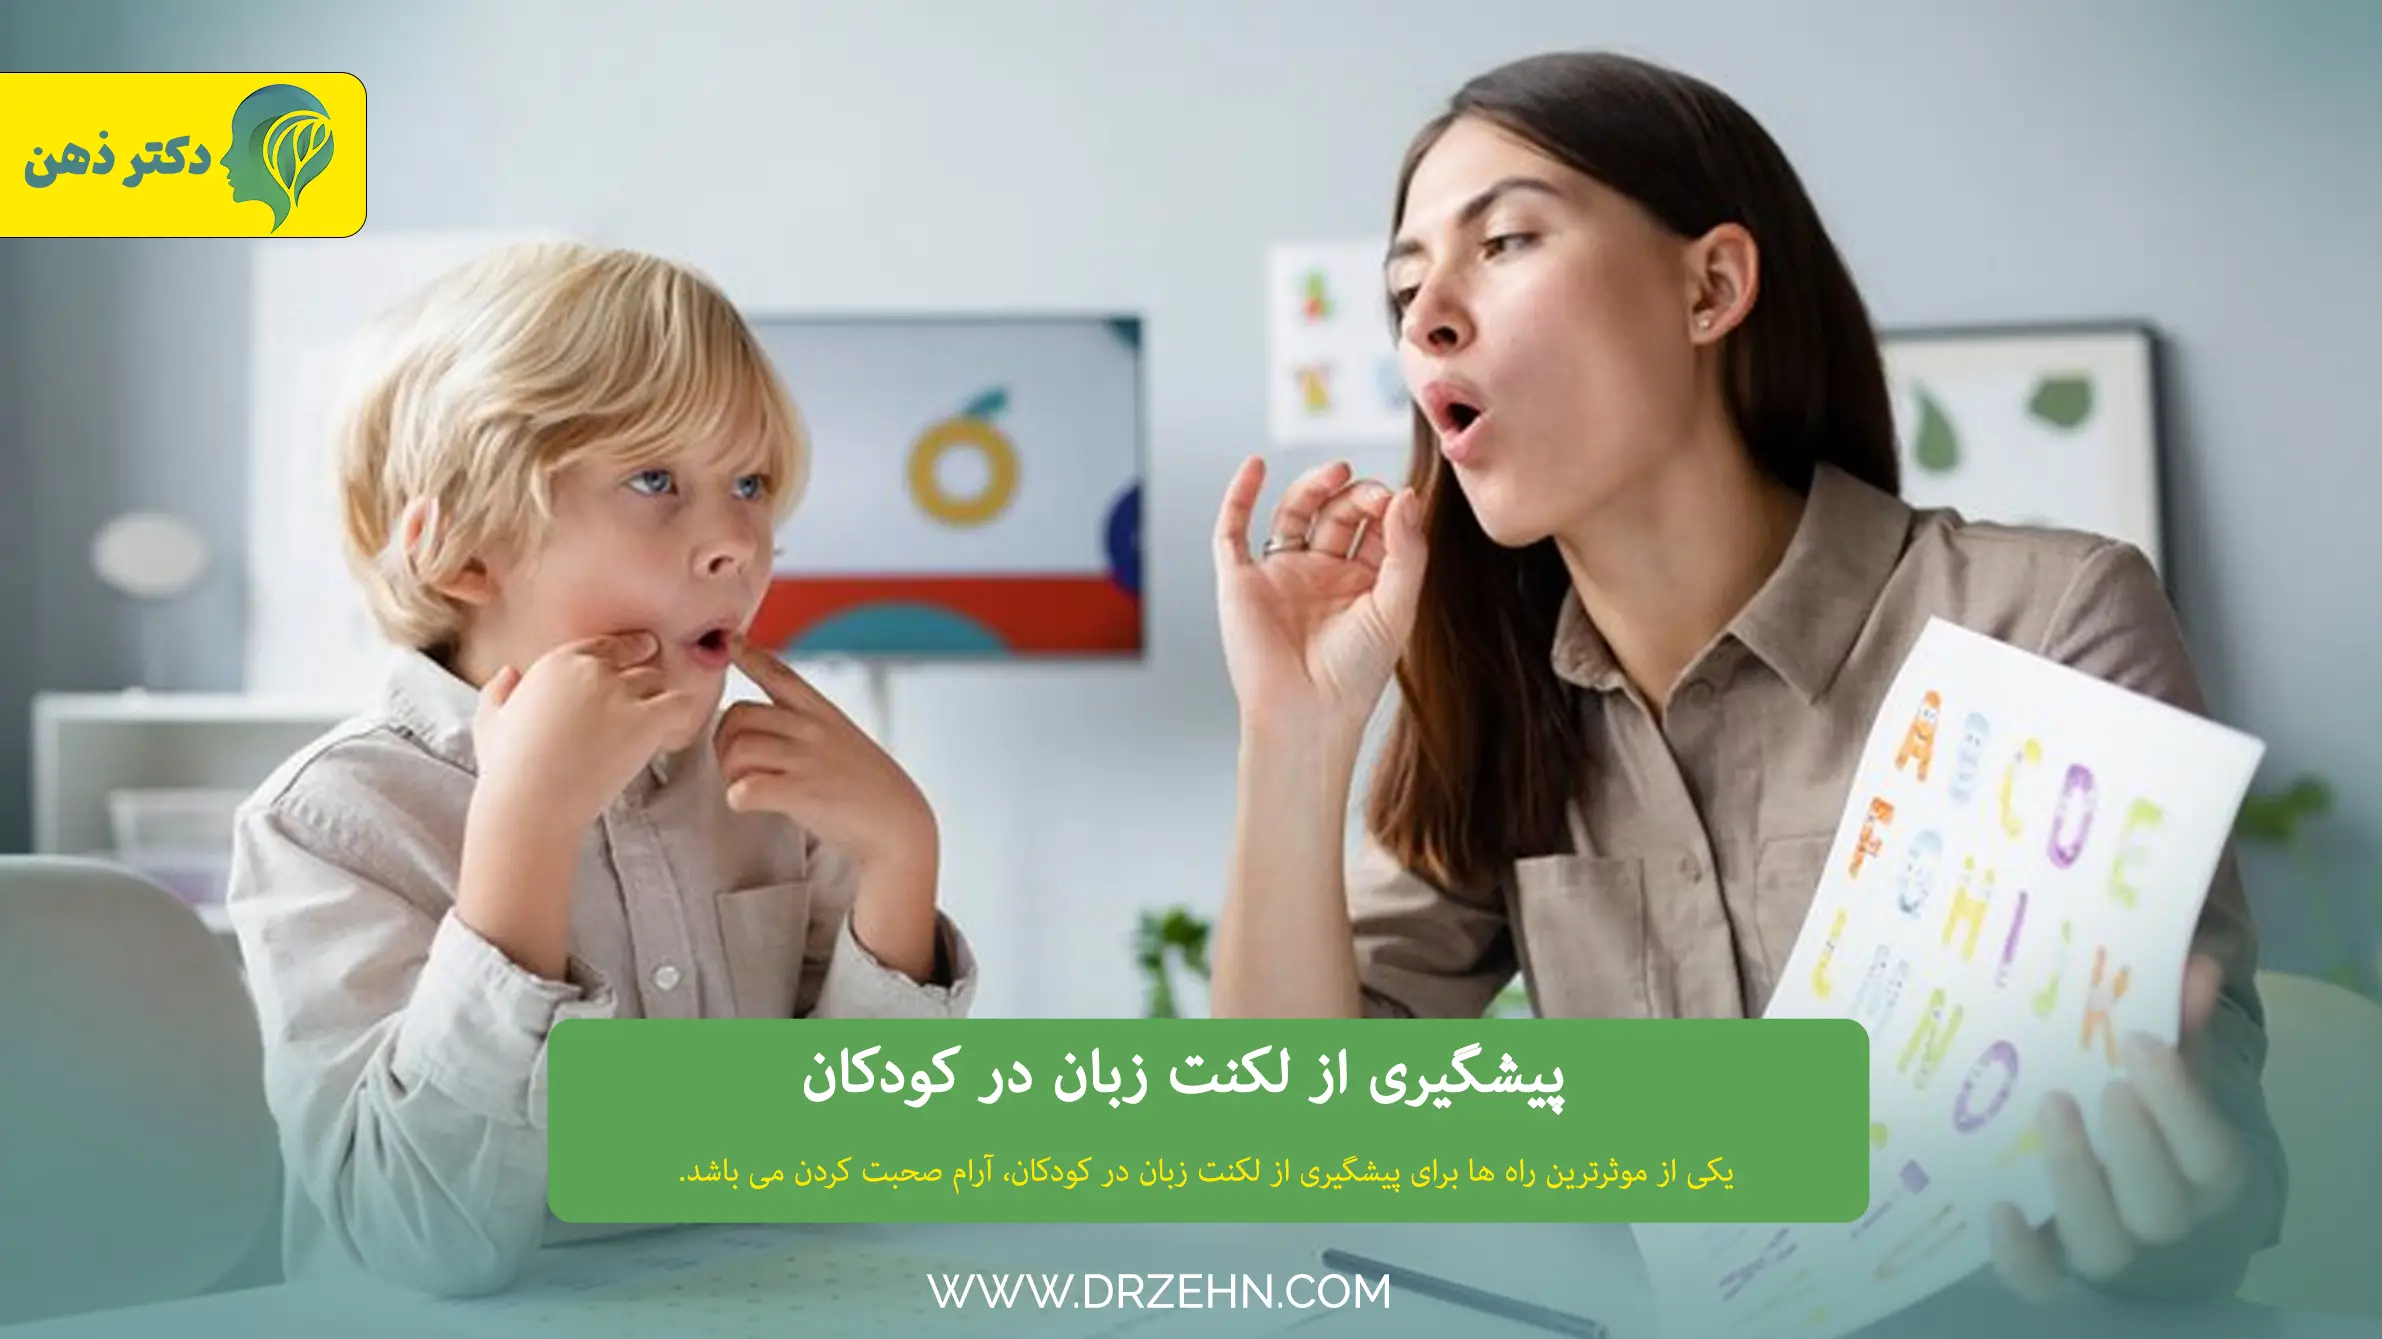 جلوگیری از لکنت زبان در کودکان